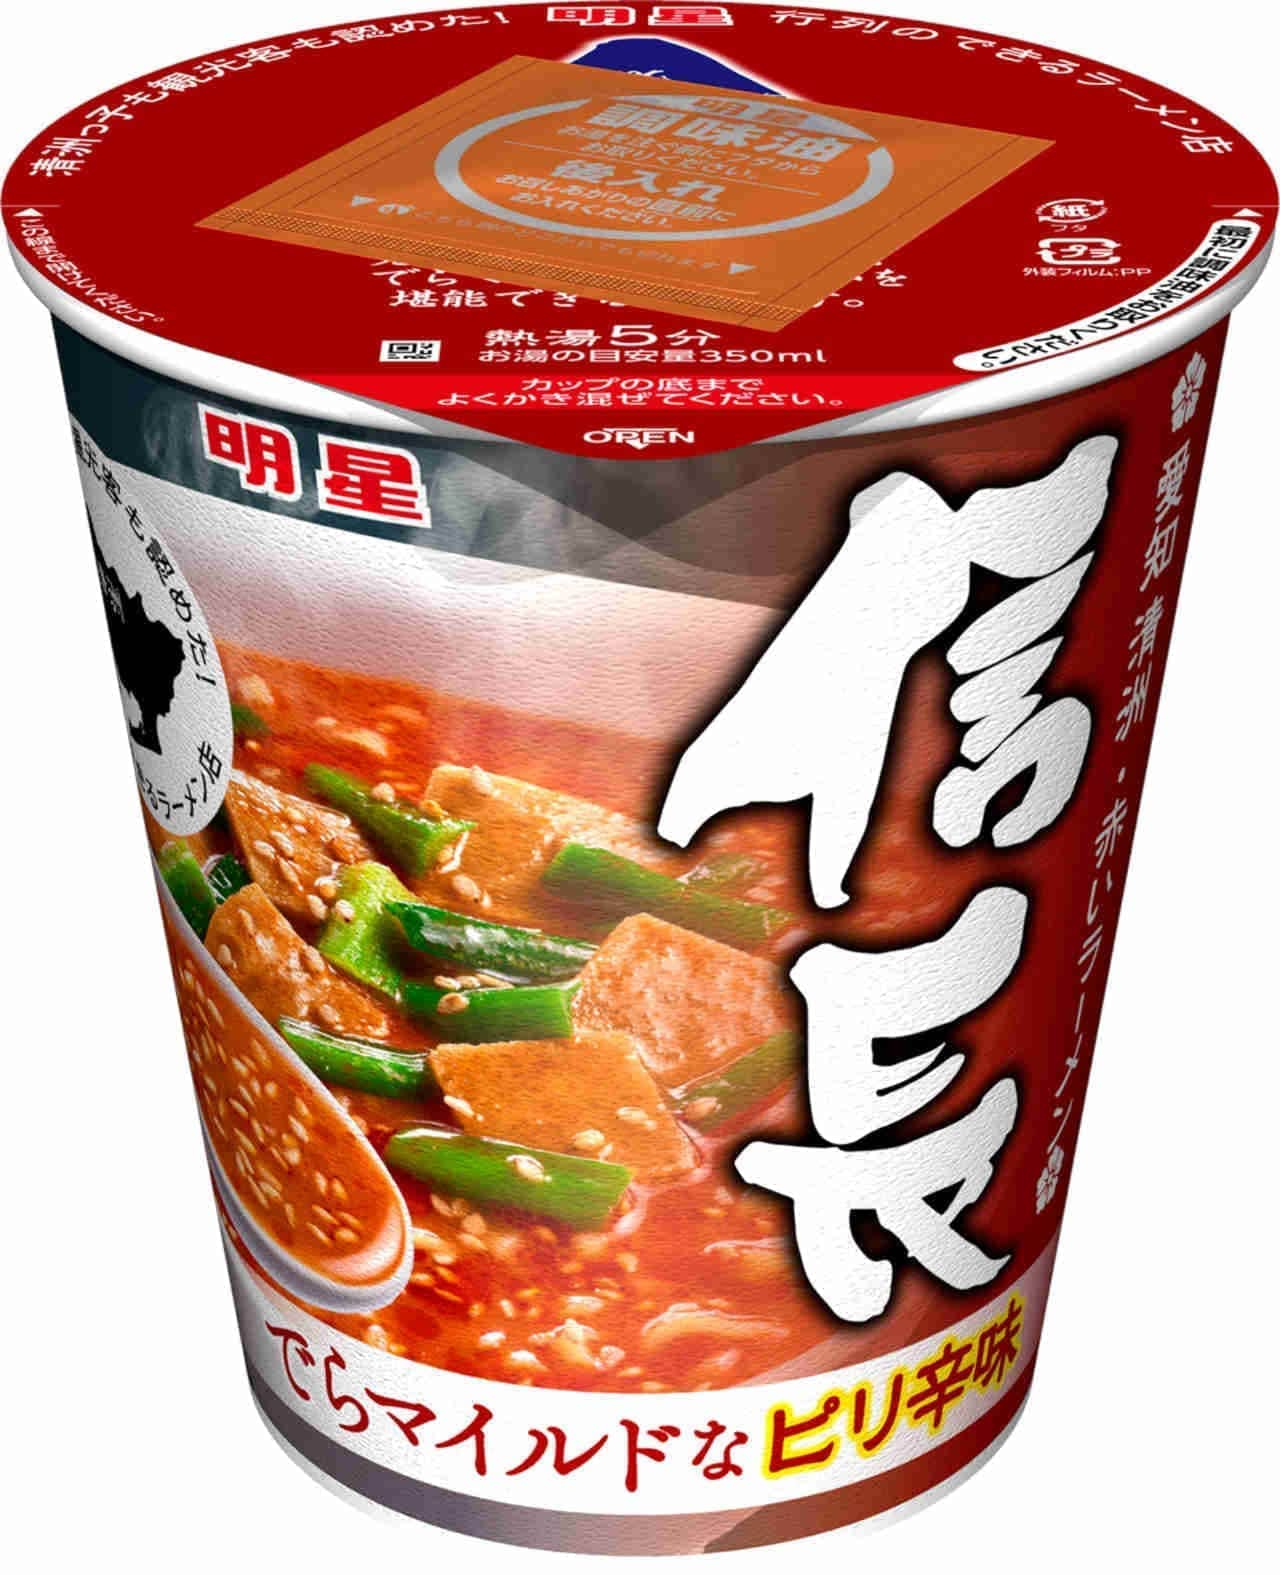 Myojo Foods "Myojo Nobunaga Red Ramen"